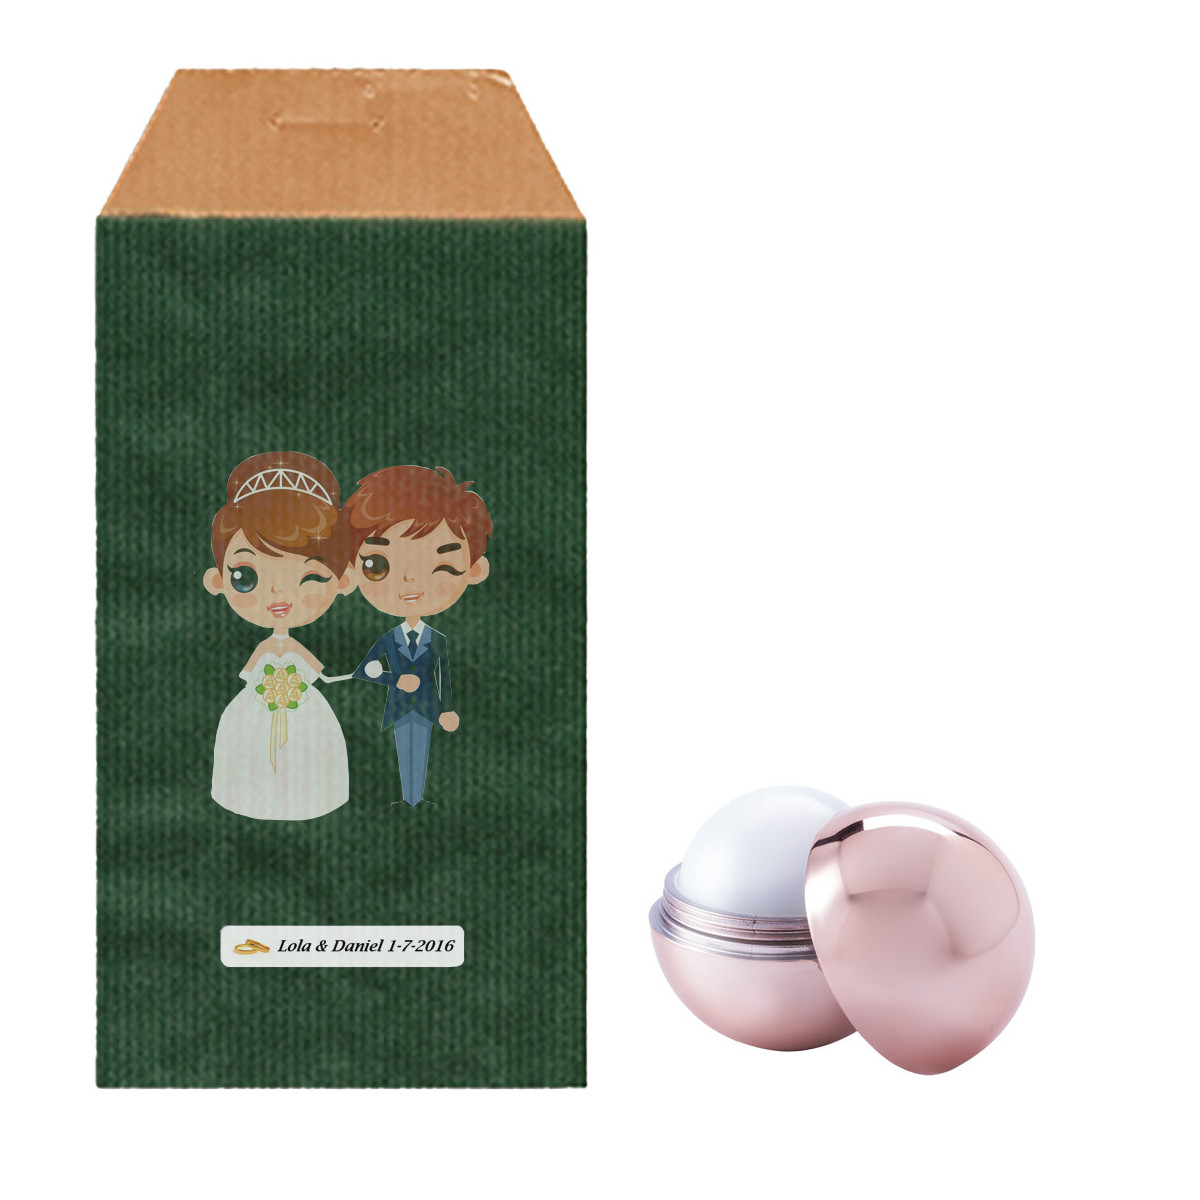 Esfera de protetor labial com envelope kraft verde e adesivos de casamento